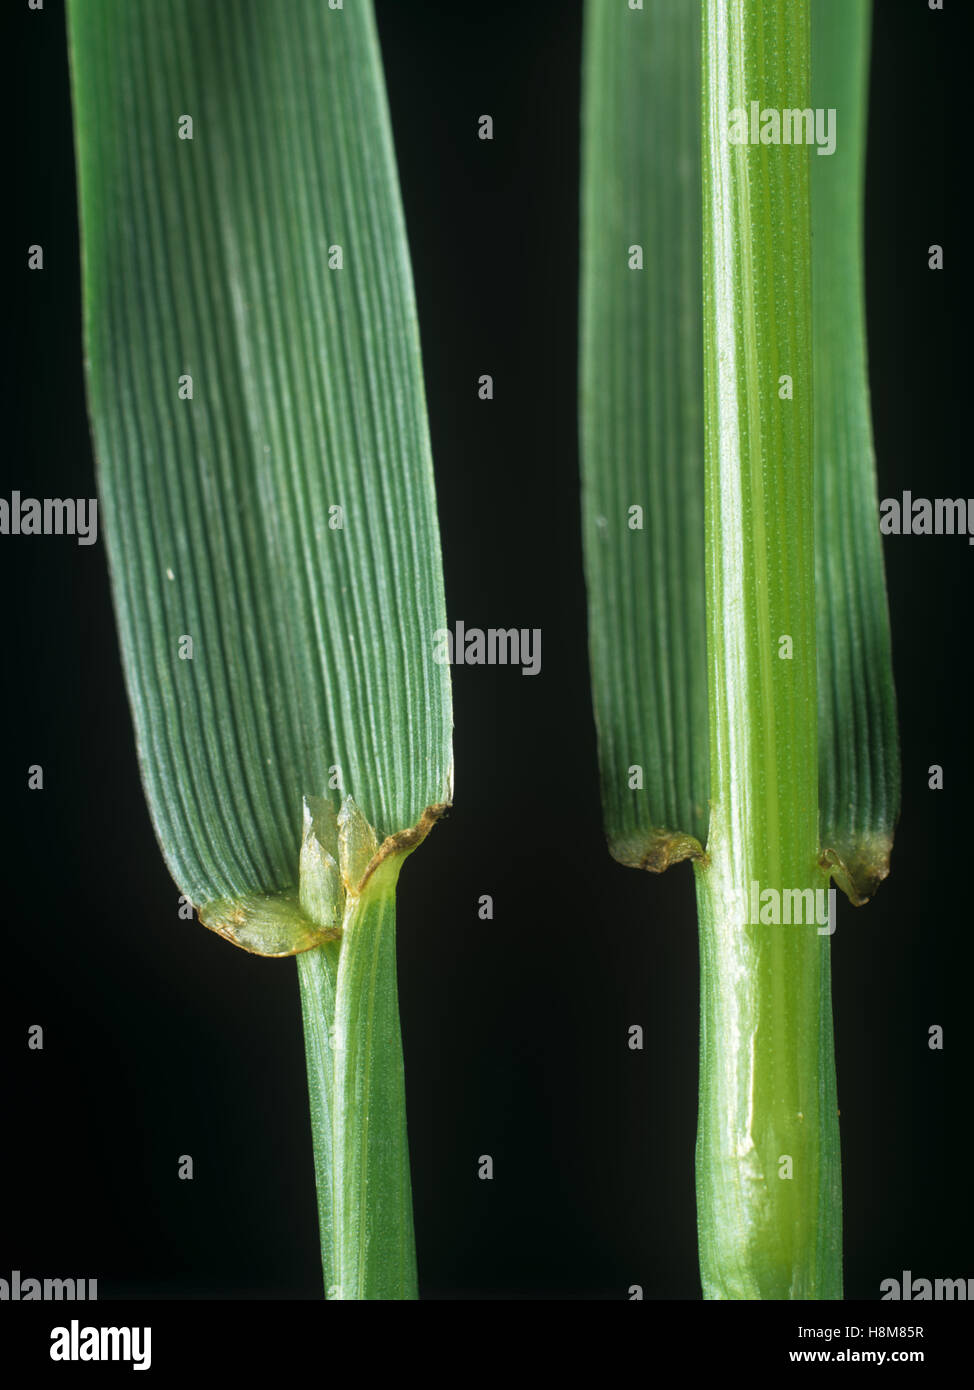 Le ray-grass vivace Lolium perenne, feuille ligule sur le noeud et d'un pétiole herbe agricole Banque D'Images